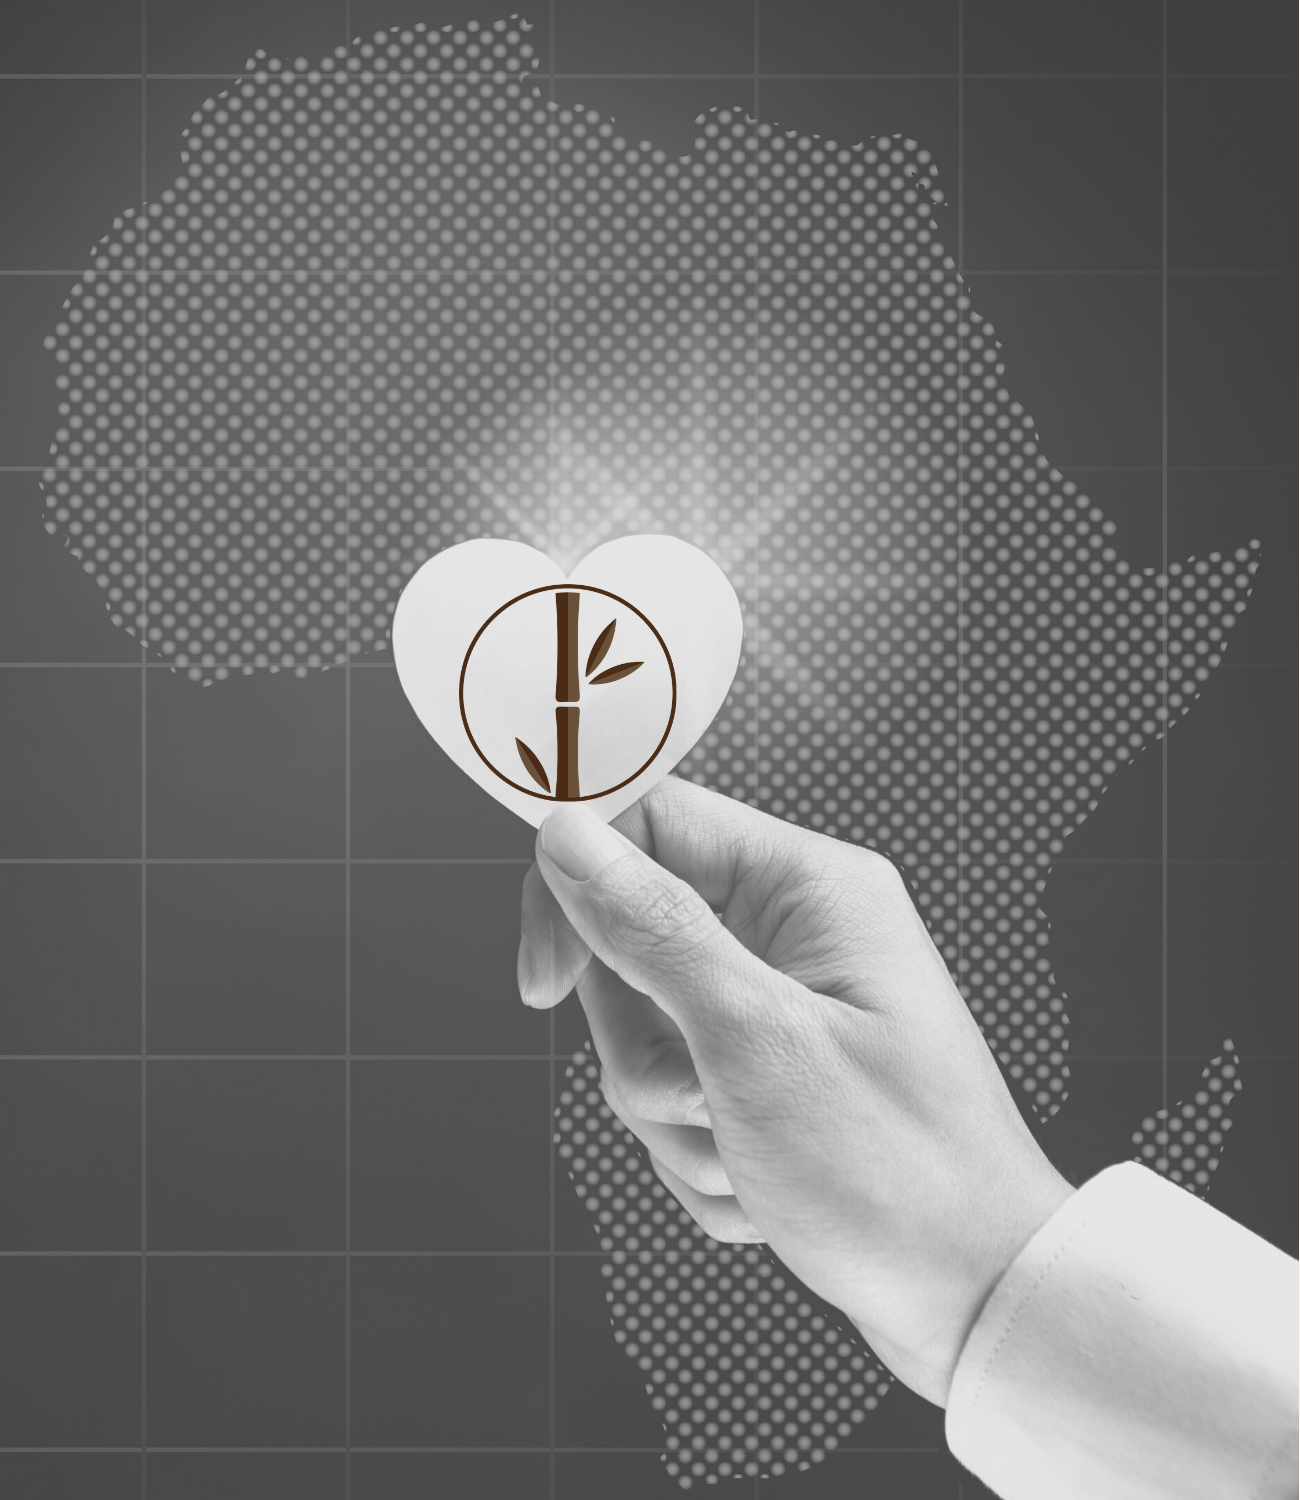 WOOD ELSE? - Vision eigene Produktion in Afrika